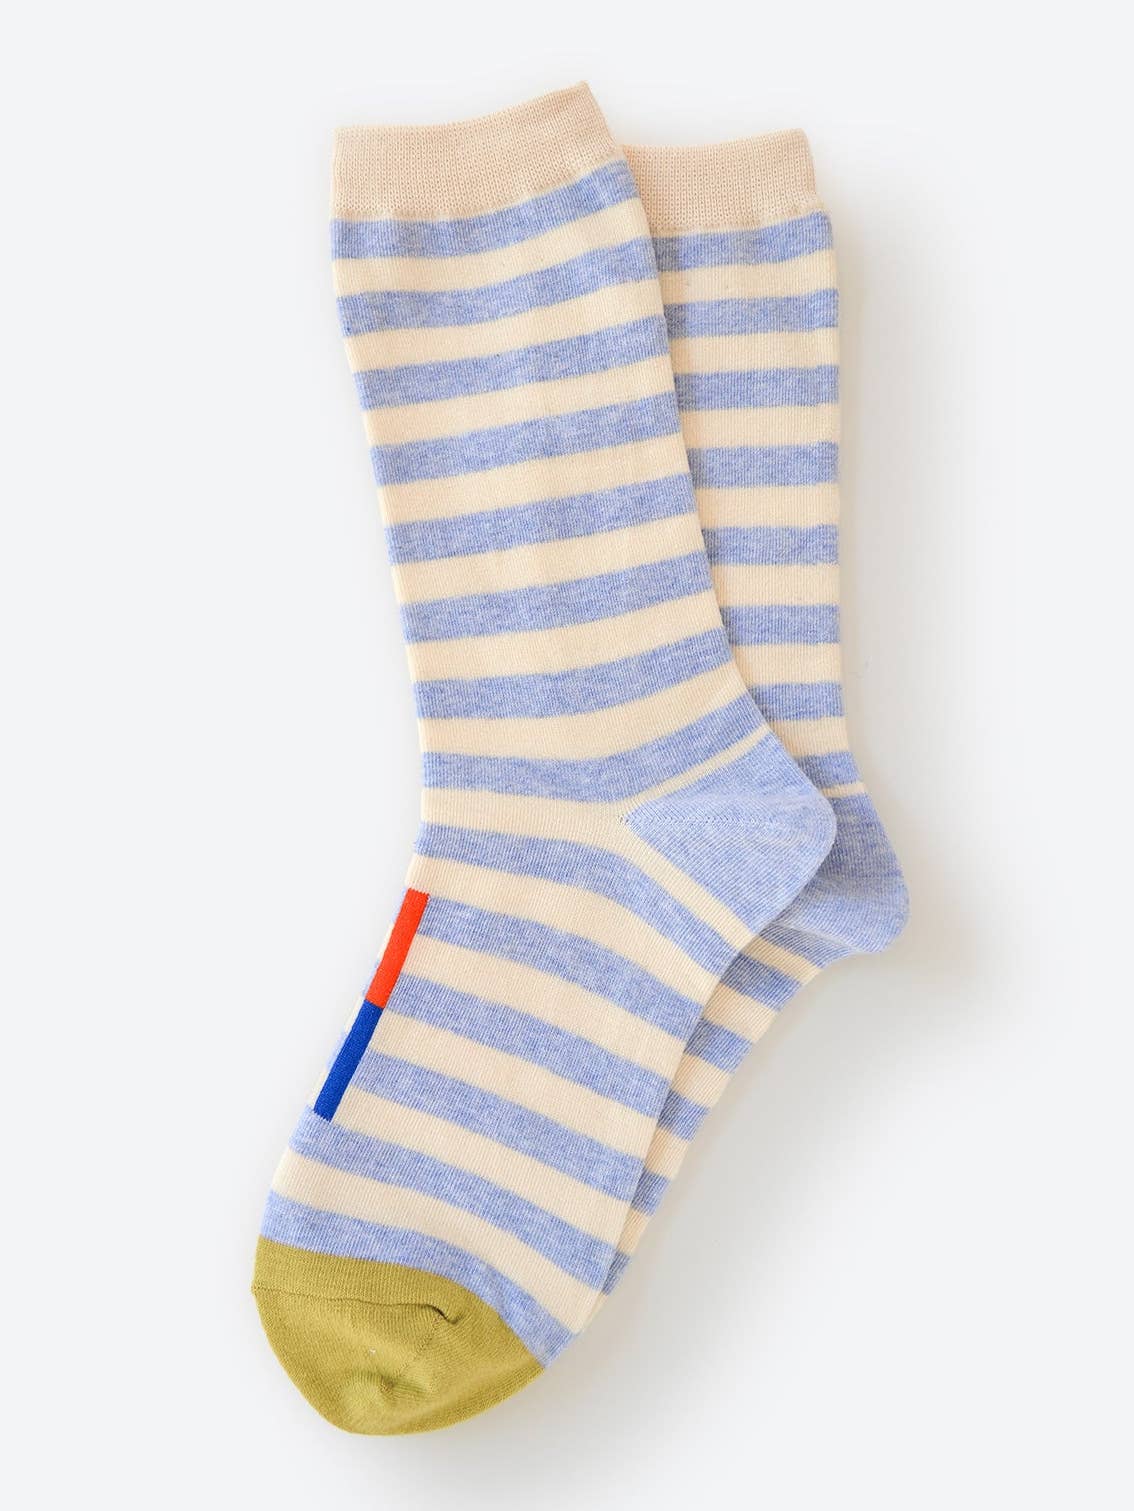 Hooray Sock Co. Greenwich Socks, Men's